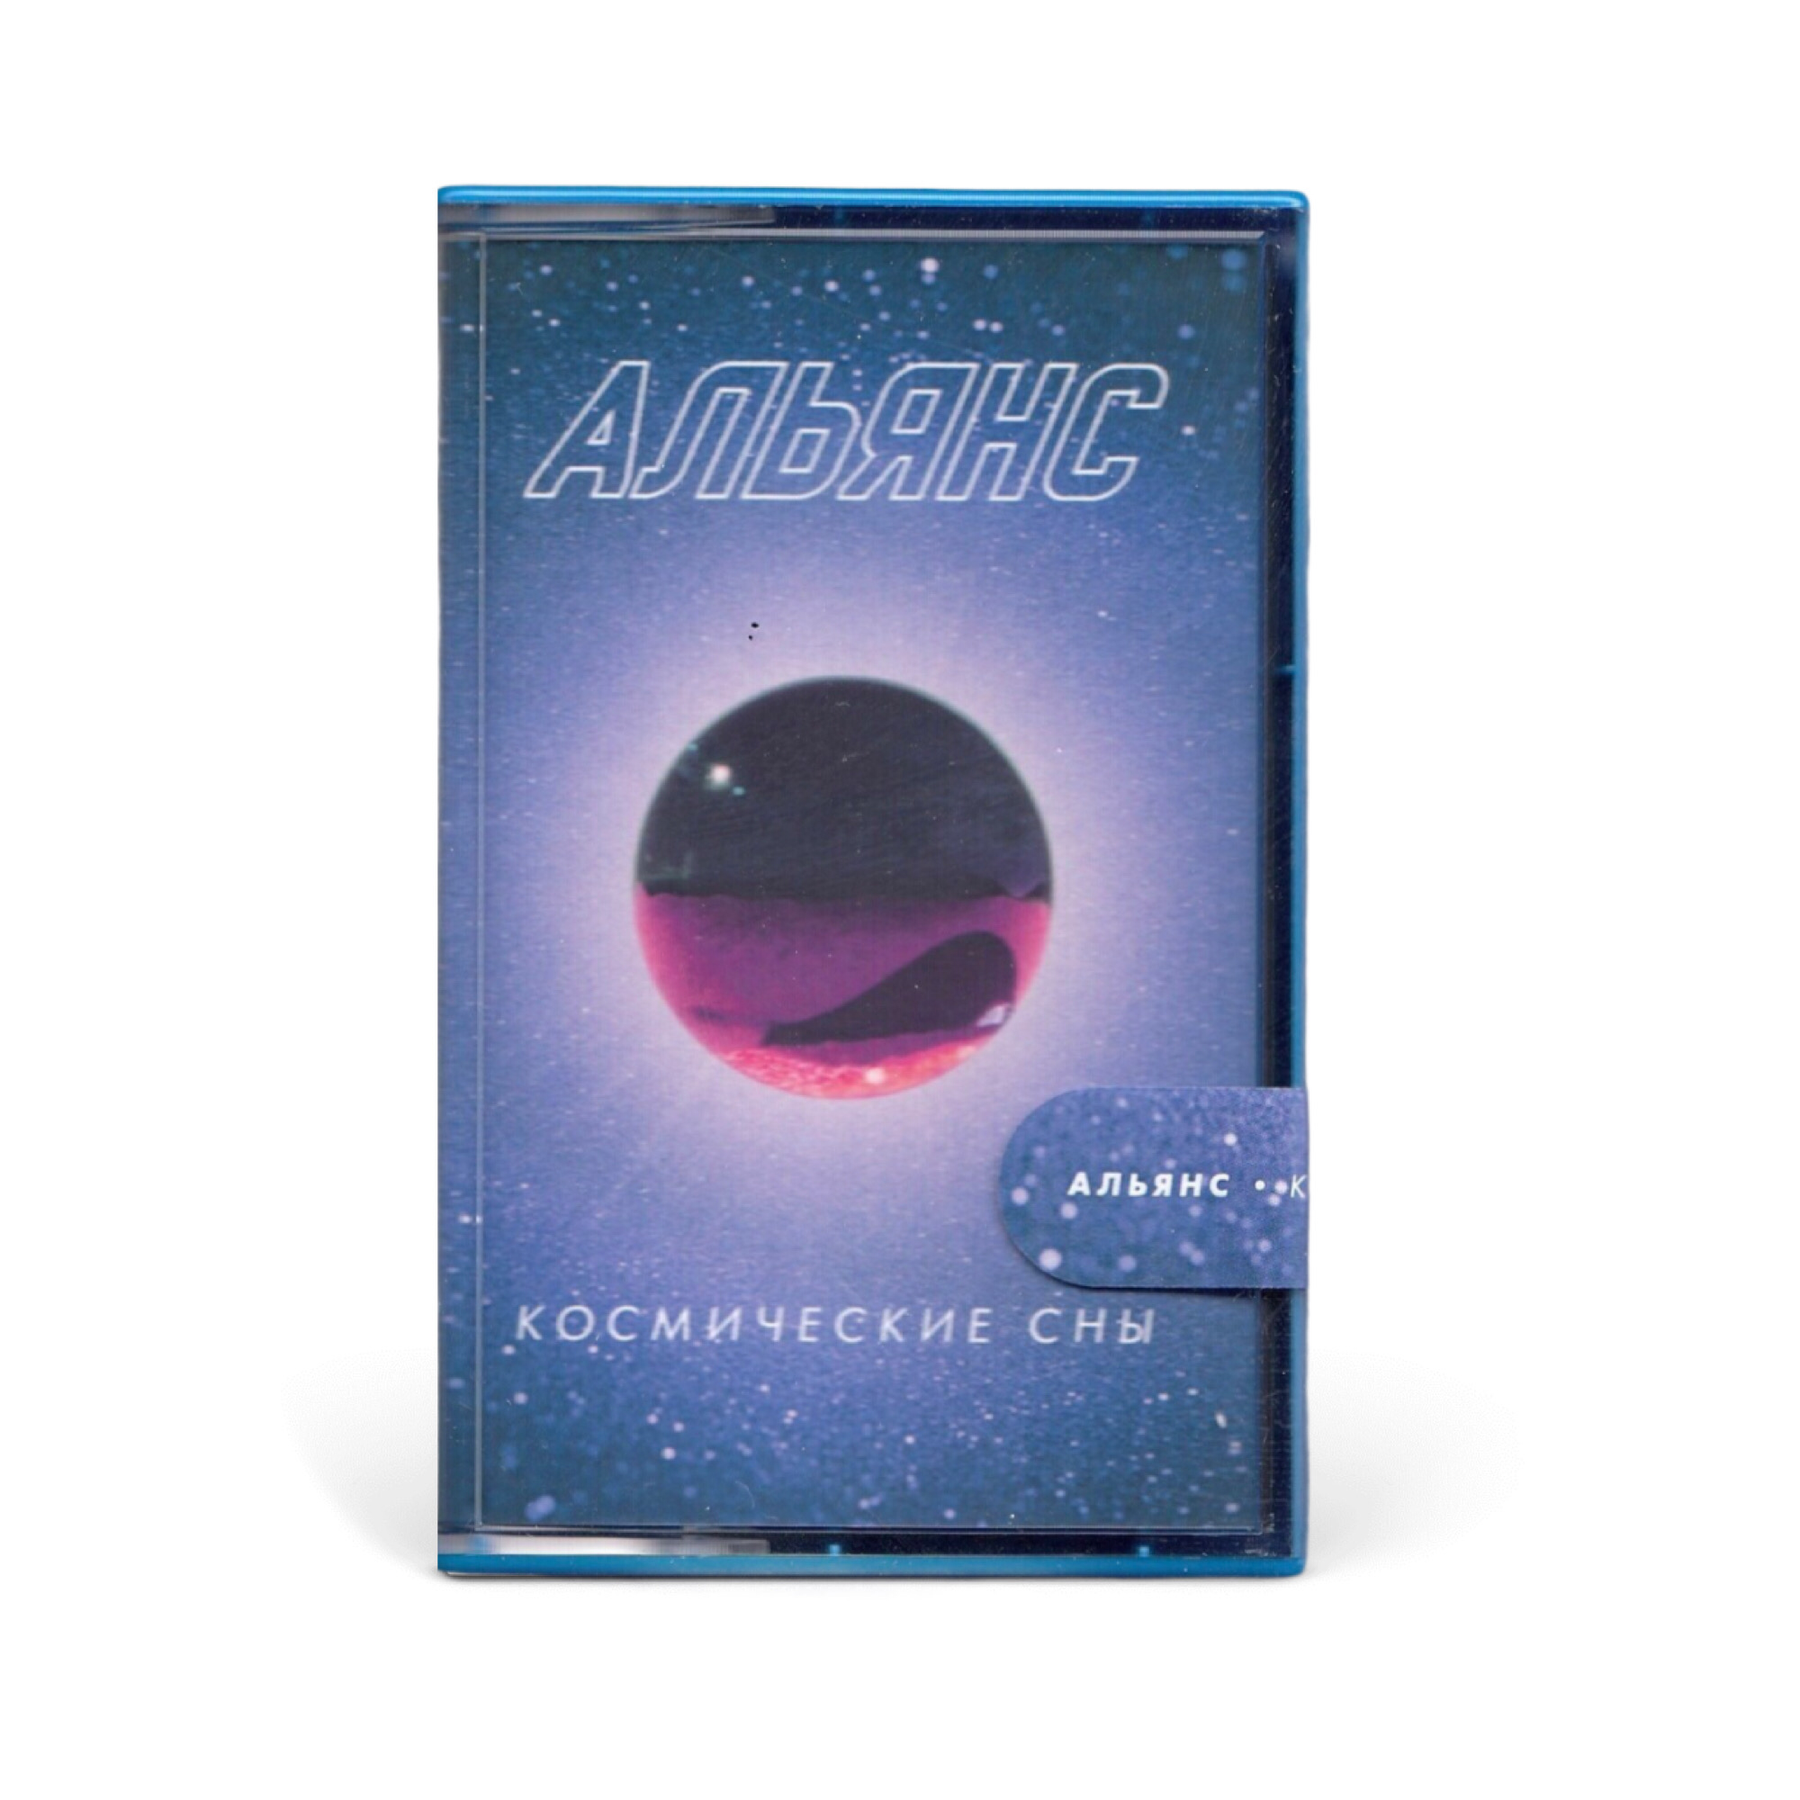 Компакт кассета MC: Альянс — «Космические сны» (2020) [Limited Tape Edition]